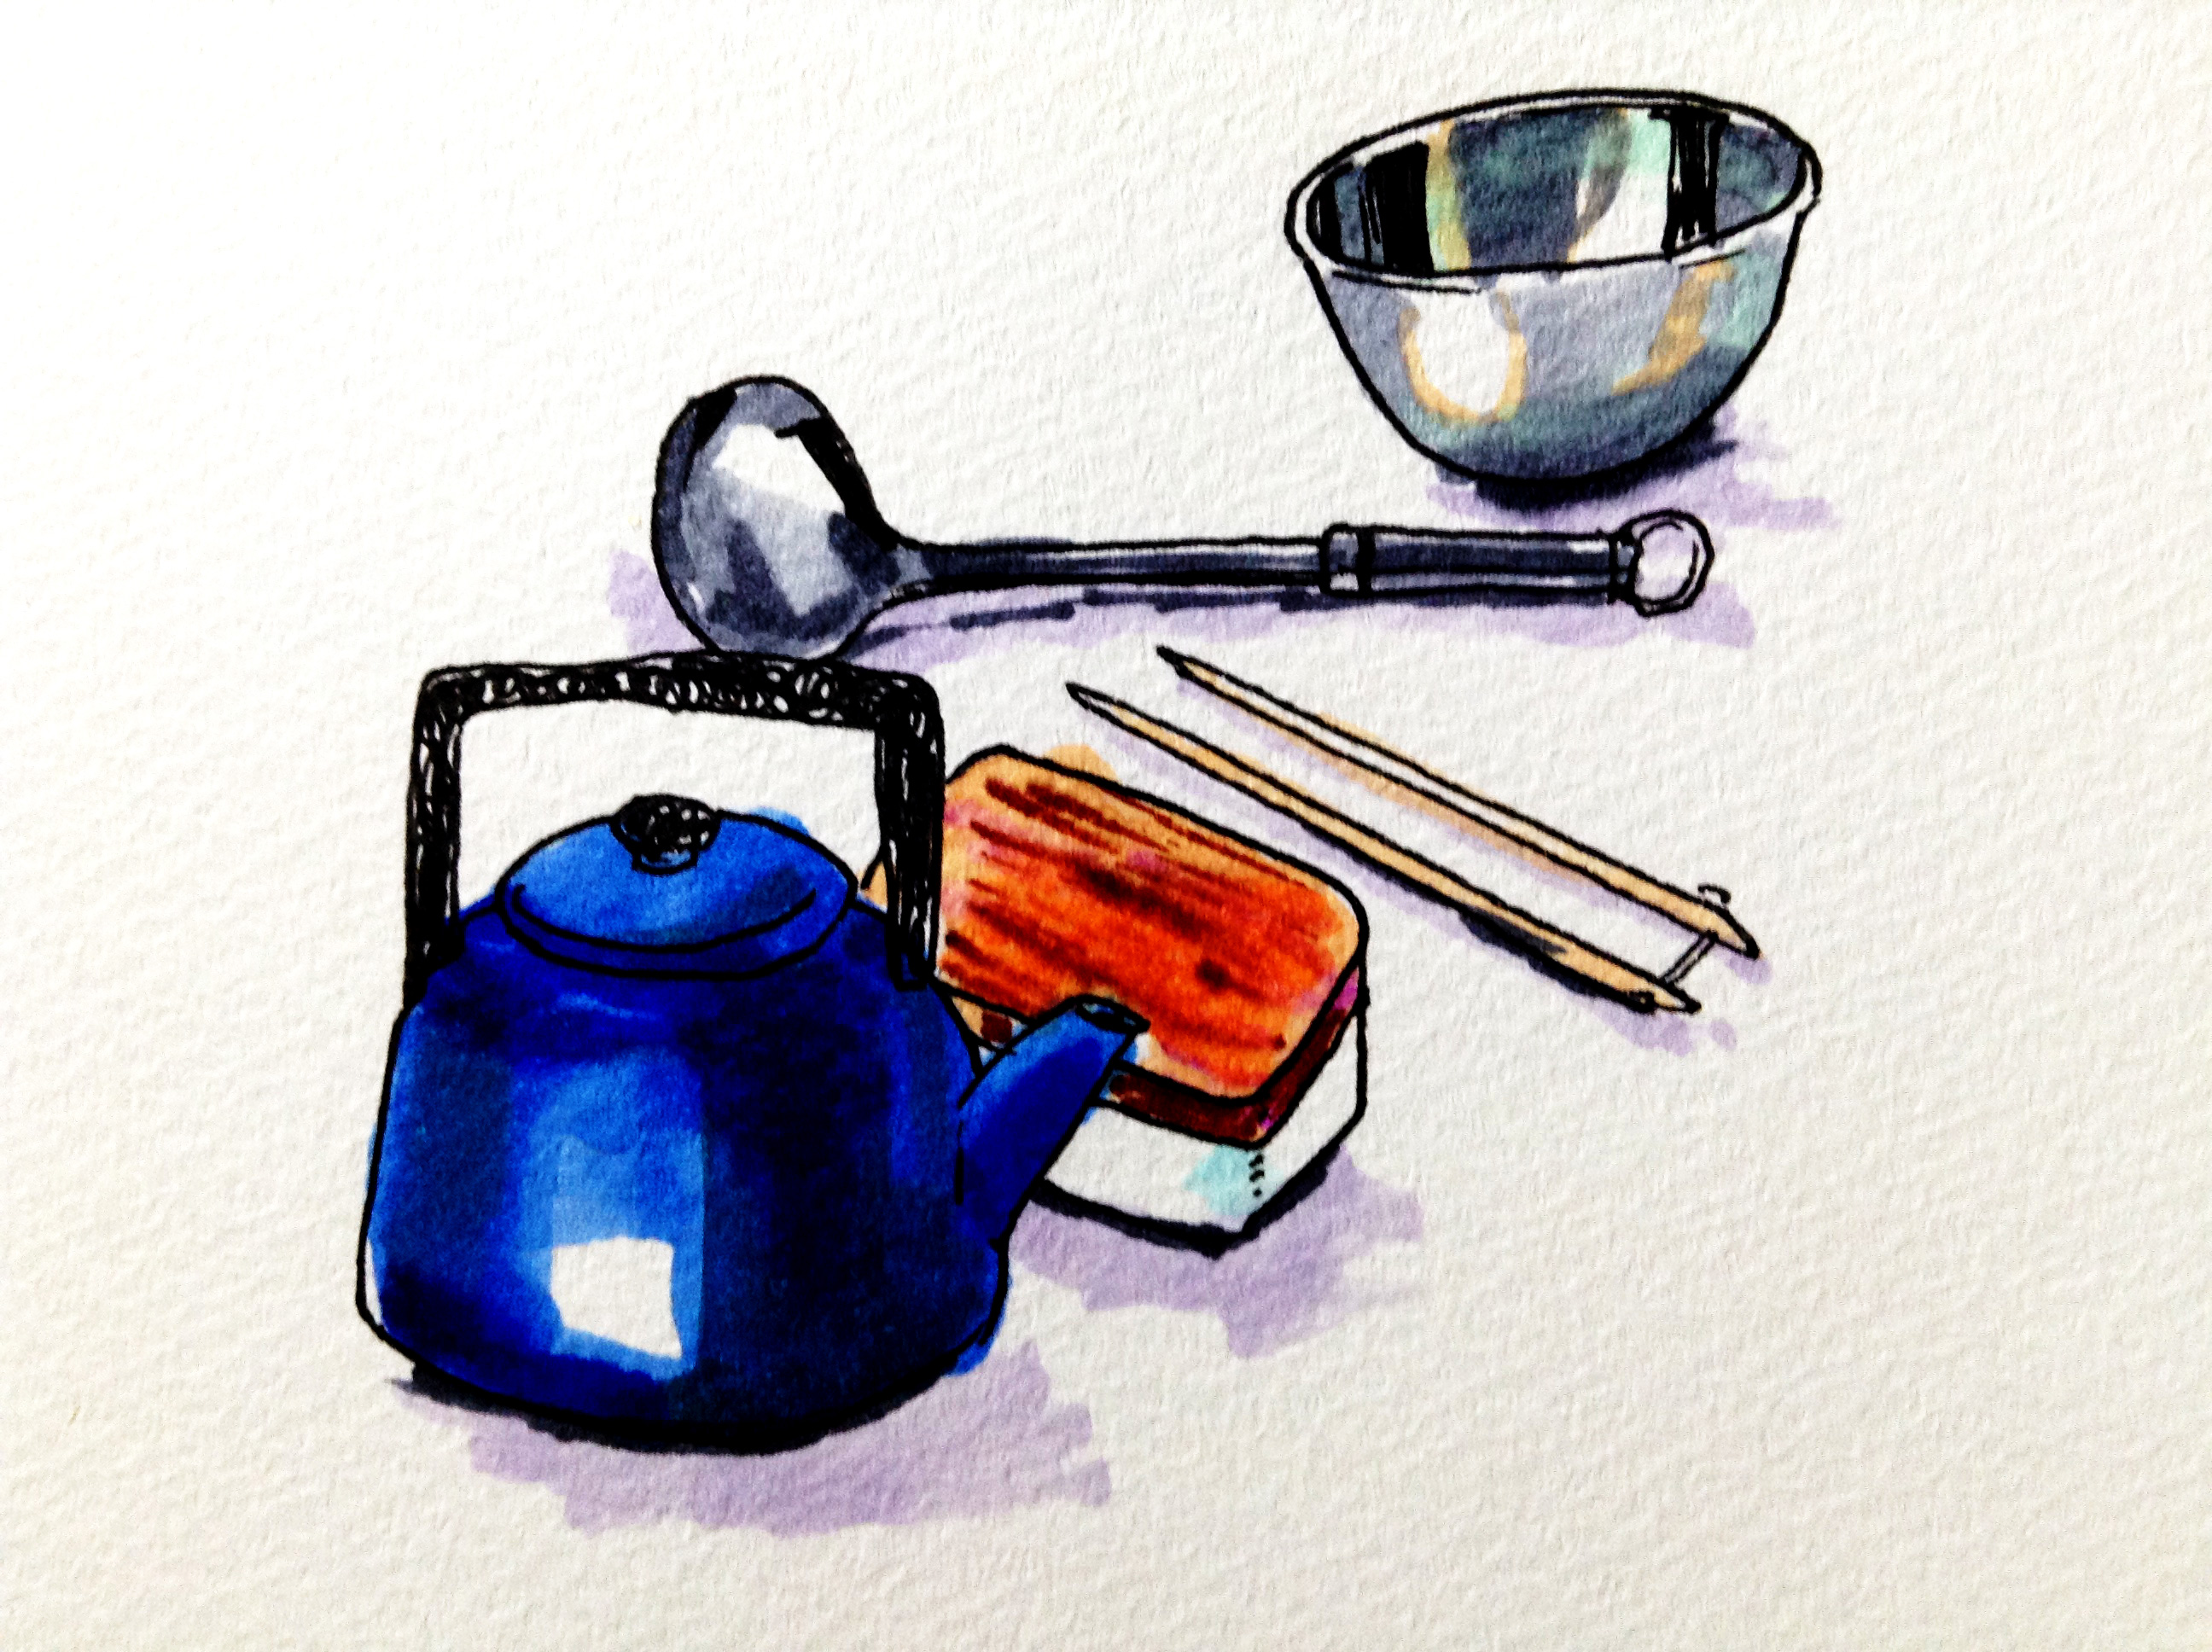 憧れのキッチンに置きたい琺瑯のやかんやアルミのボウルなどのキッチン用品をコピックマーカーで描いたイラスト